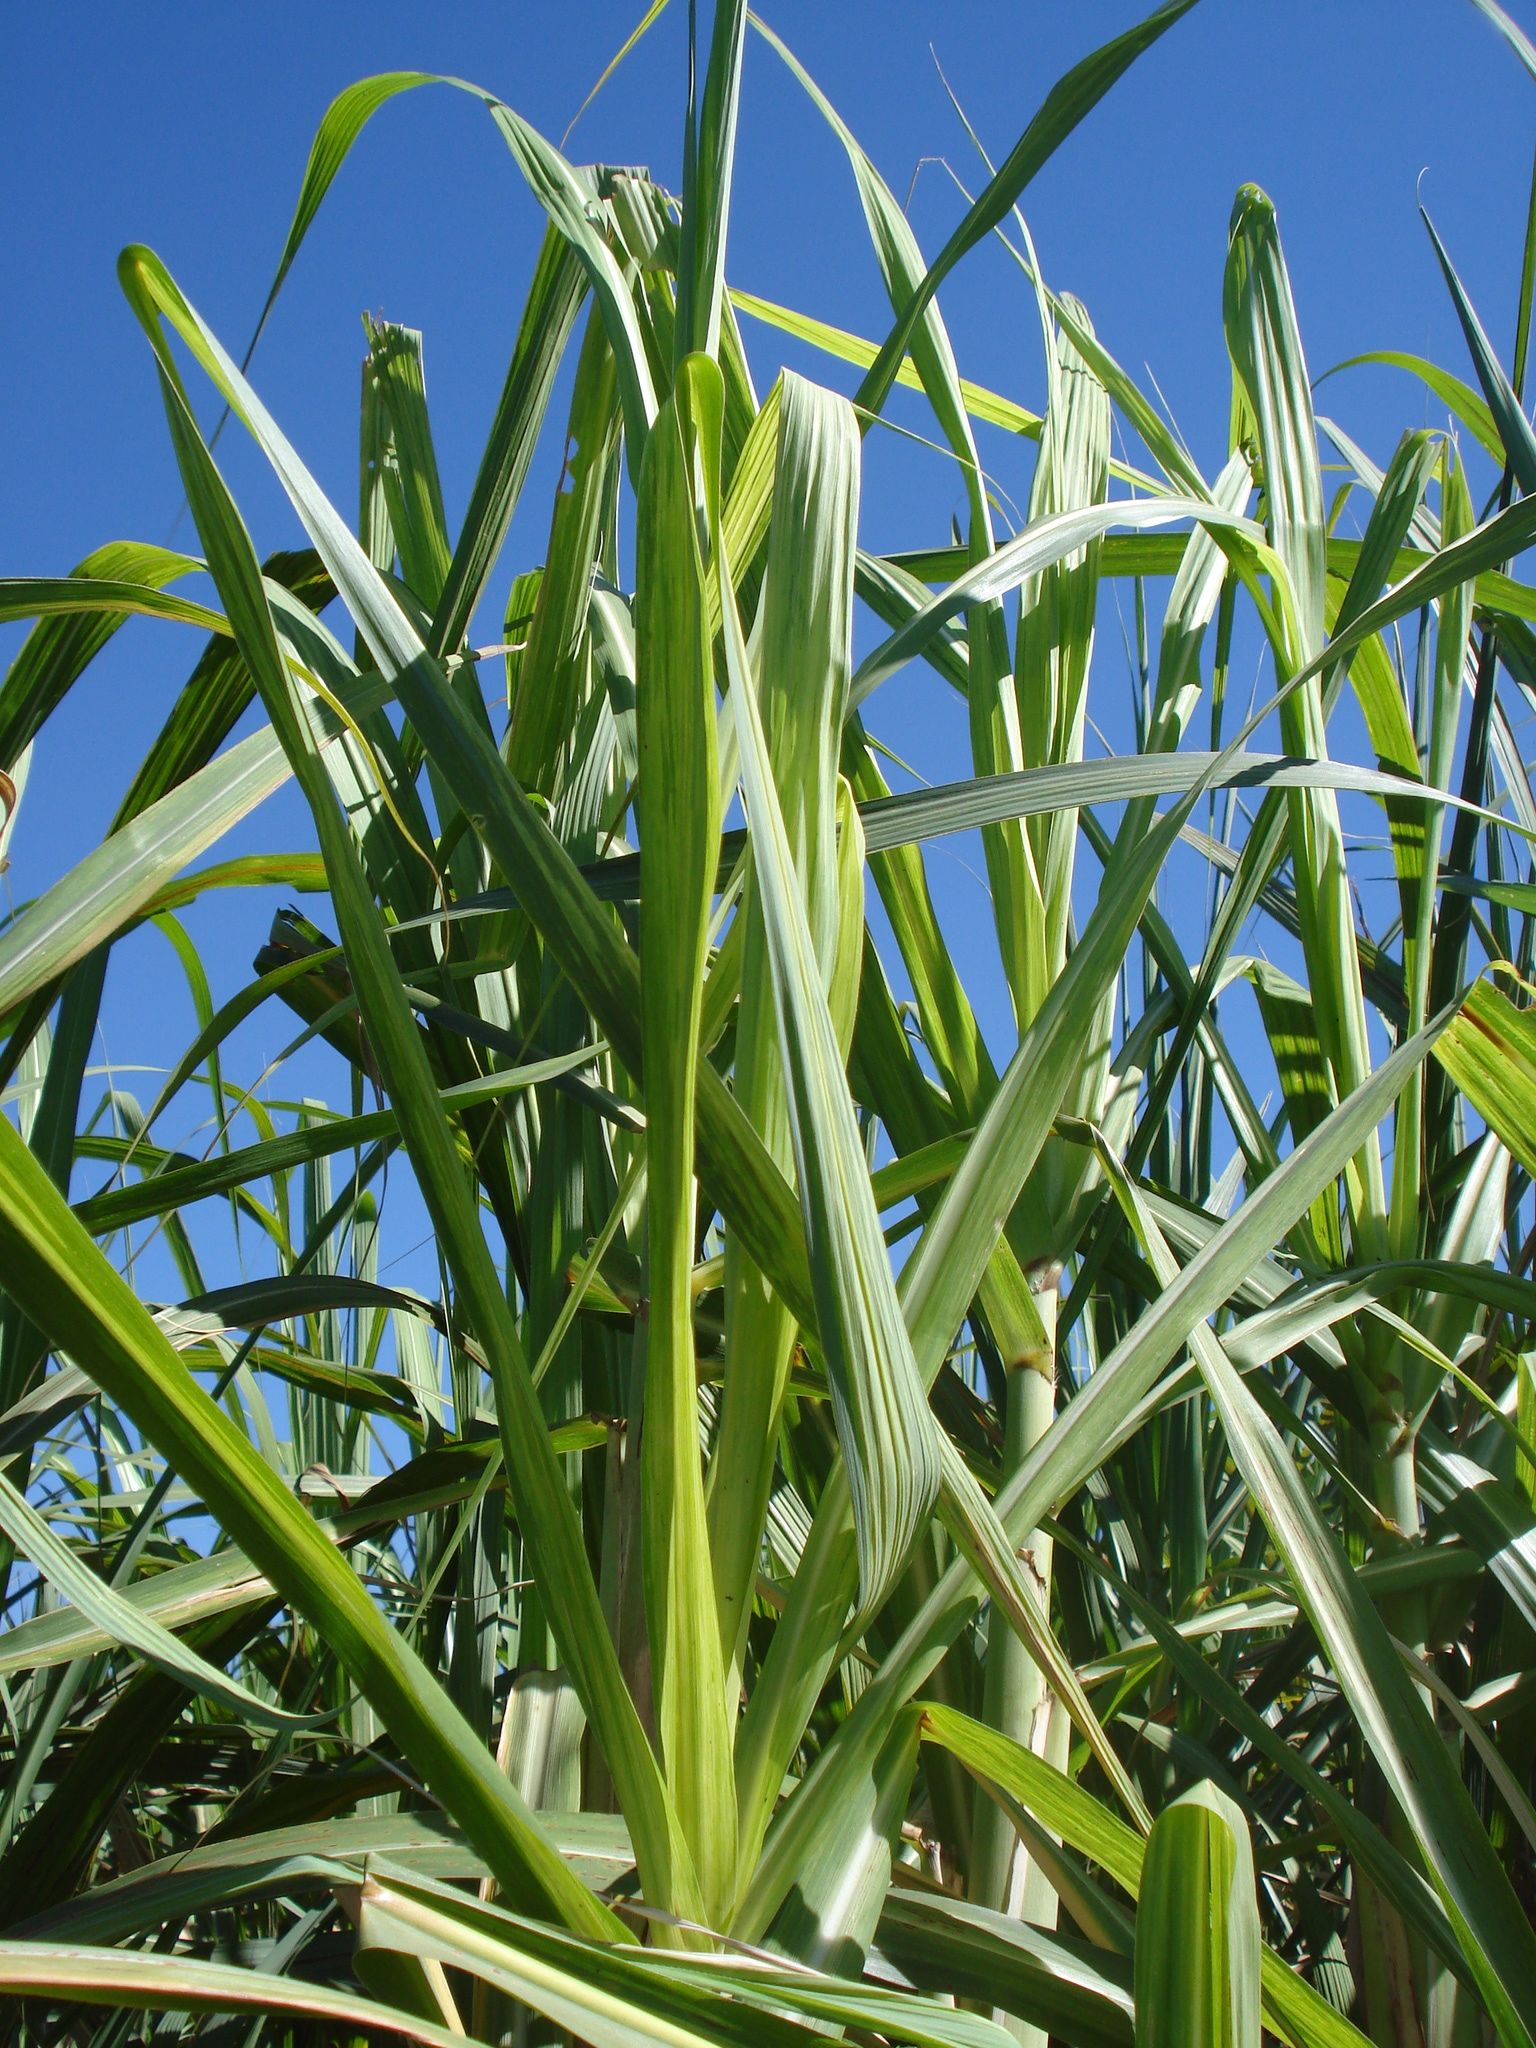 <p><b><p>Plantas de cana-de-açúcar no campo apresentando sintomas fortes de mosaico.</p></b></p><p>Autor: M.C.Gonçalves</p>